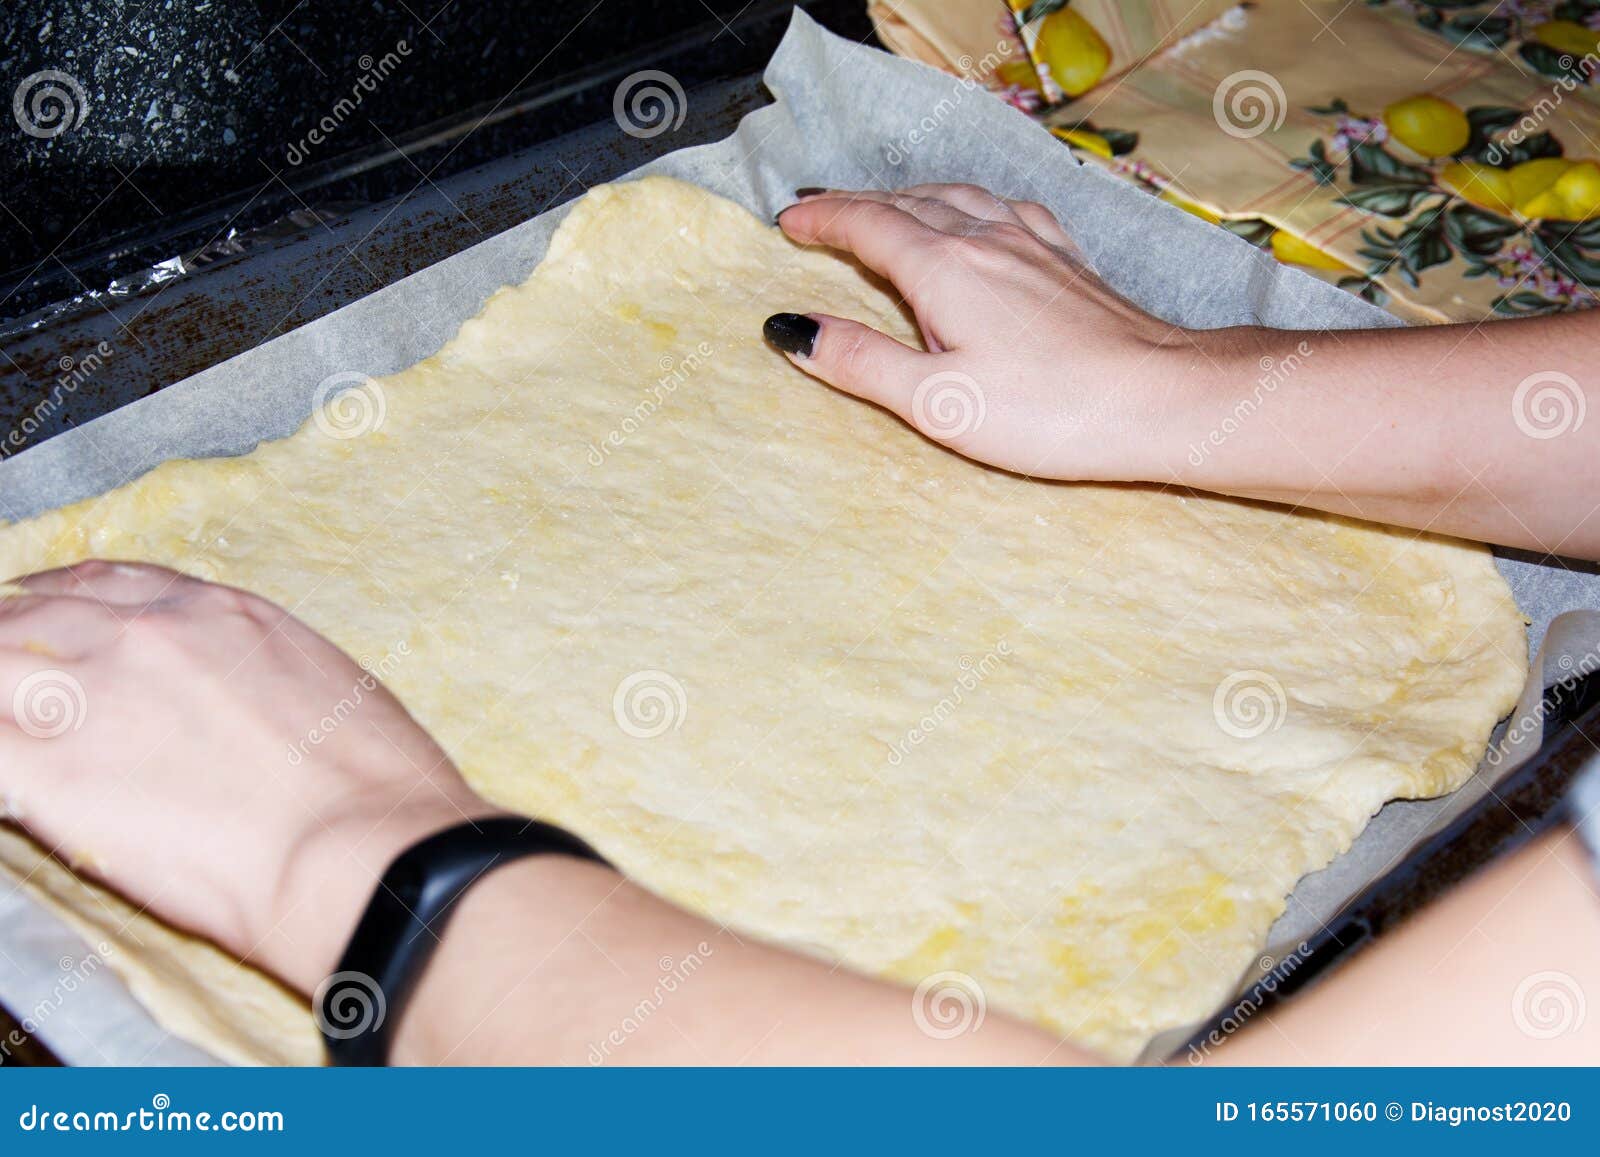 можно ли выпекать на фольге пиццу в духовке вместо пергаментной бумаги фото 52